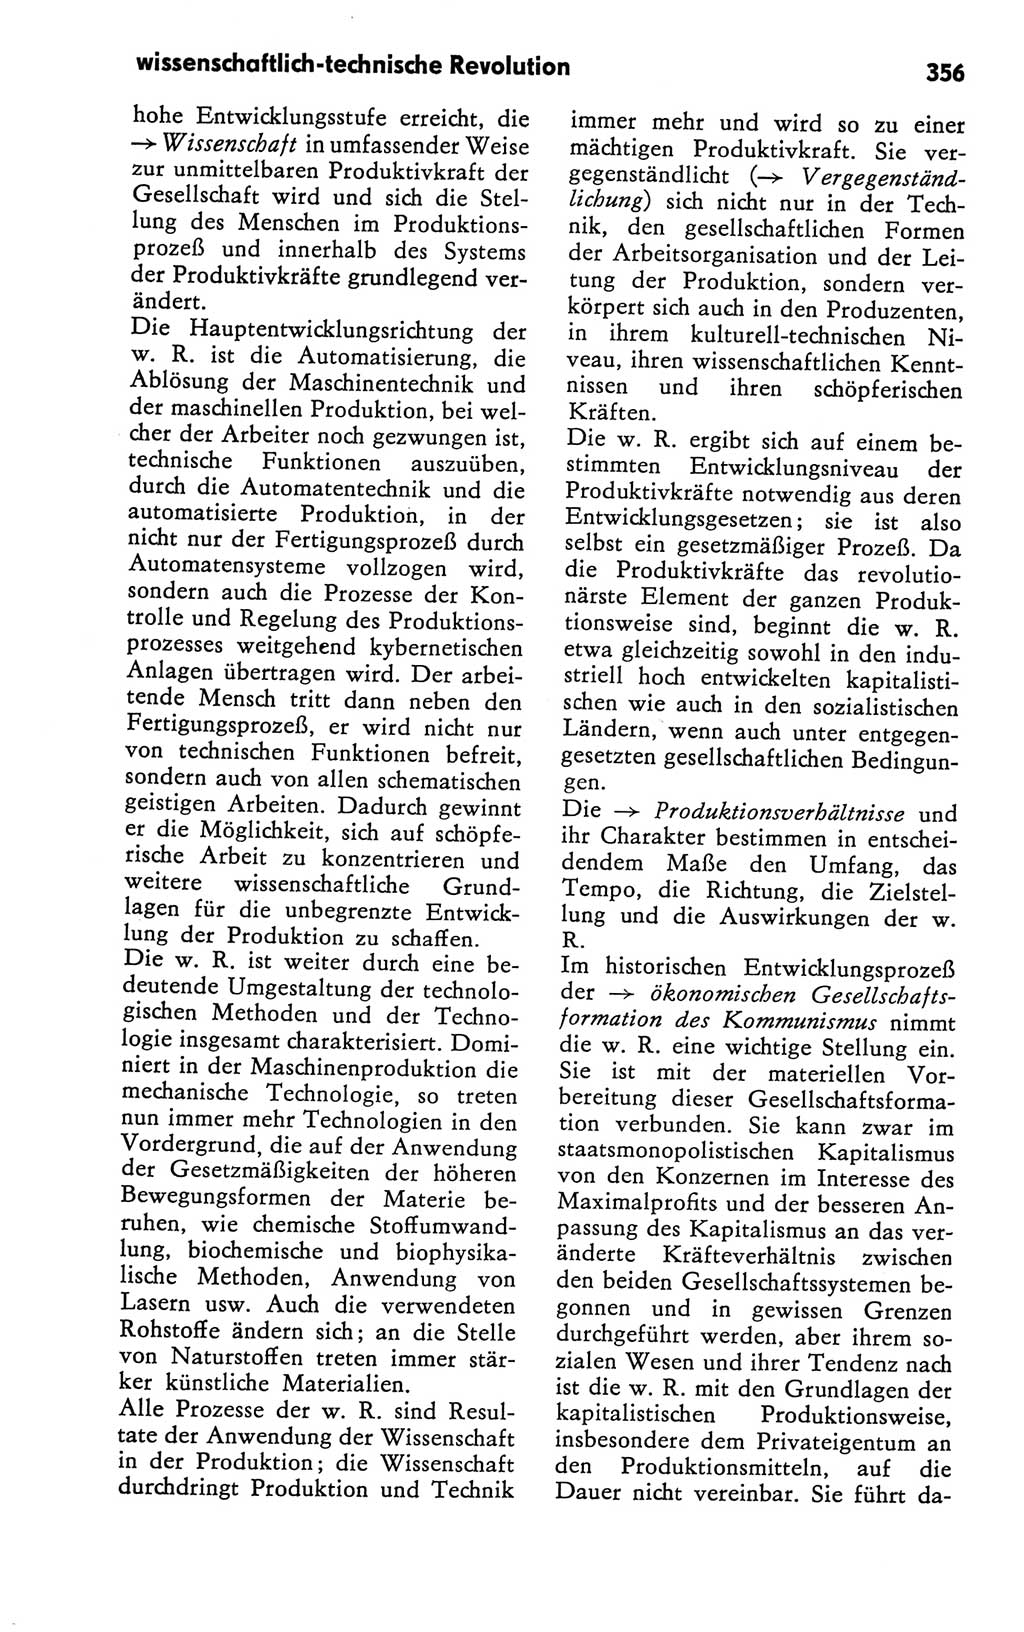 Kleines Wörterbuch der marxistisch-leninistischen Philosophie [Deutsche Demokratische Republik (DDR)] 1981, Seite 356 (Kl. Wb. ML Phil. DDR 1981, S. 356)